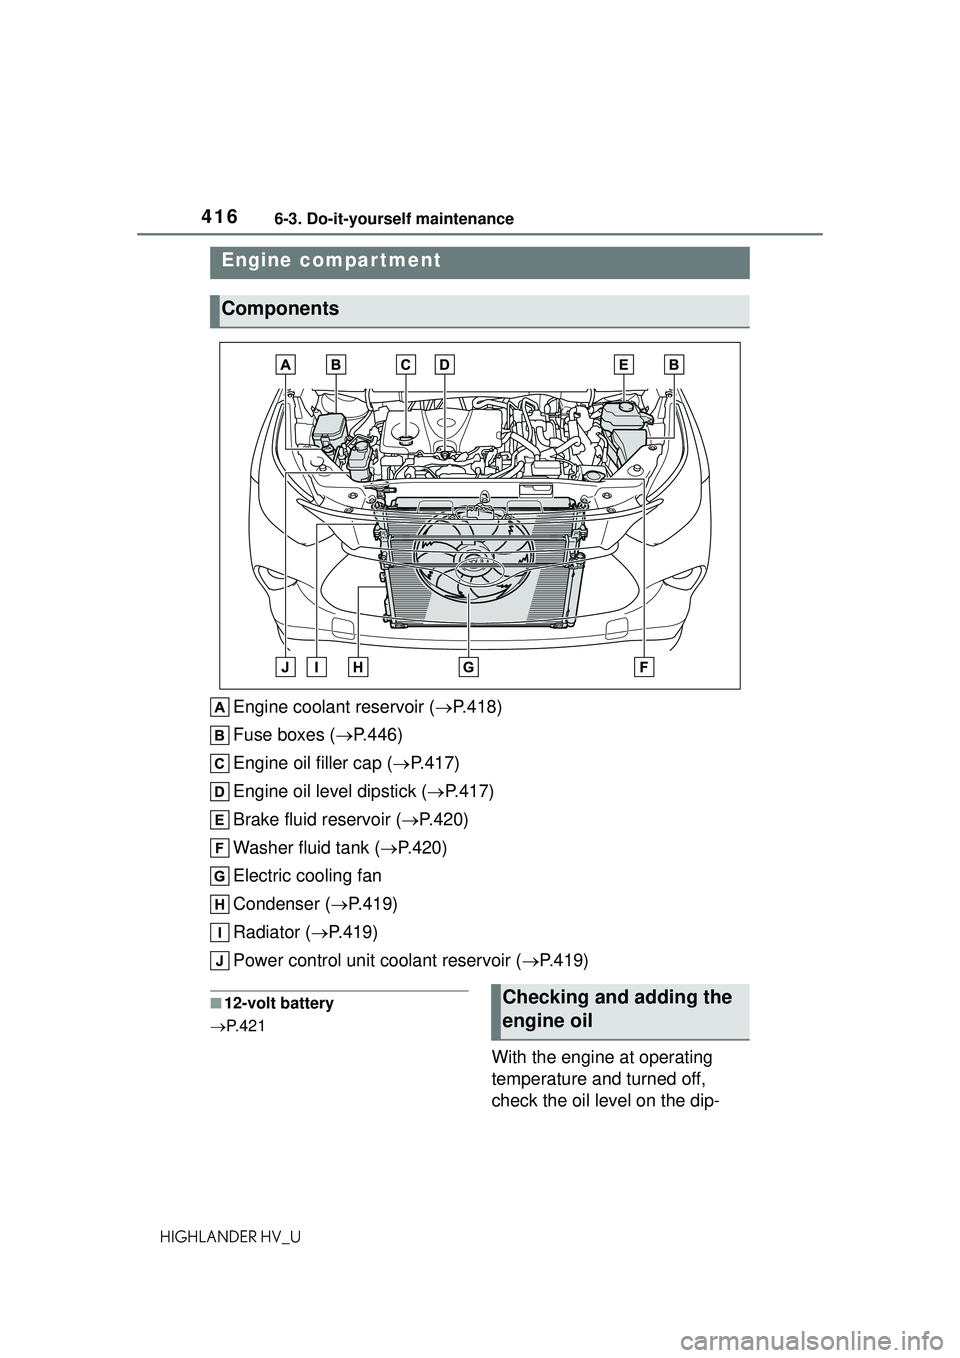 TOYOTA HIGHLANDER HYBRID 2021  Owners Manual (in English) 4166-3. Do-it-yourself maintenance
HIGHLANDER HV_U
Engine coolant reservoir (P.418)
Fuse boxes ( P.446)
Engine oil filler cap ( P.417)
Engine oil level dipstick ( P.417)
Brake fluid reserv